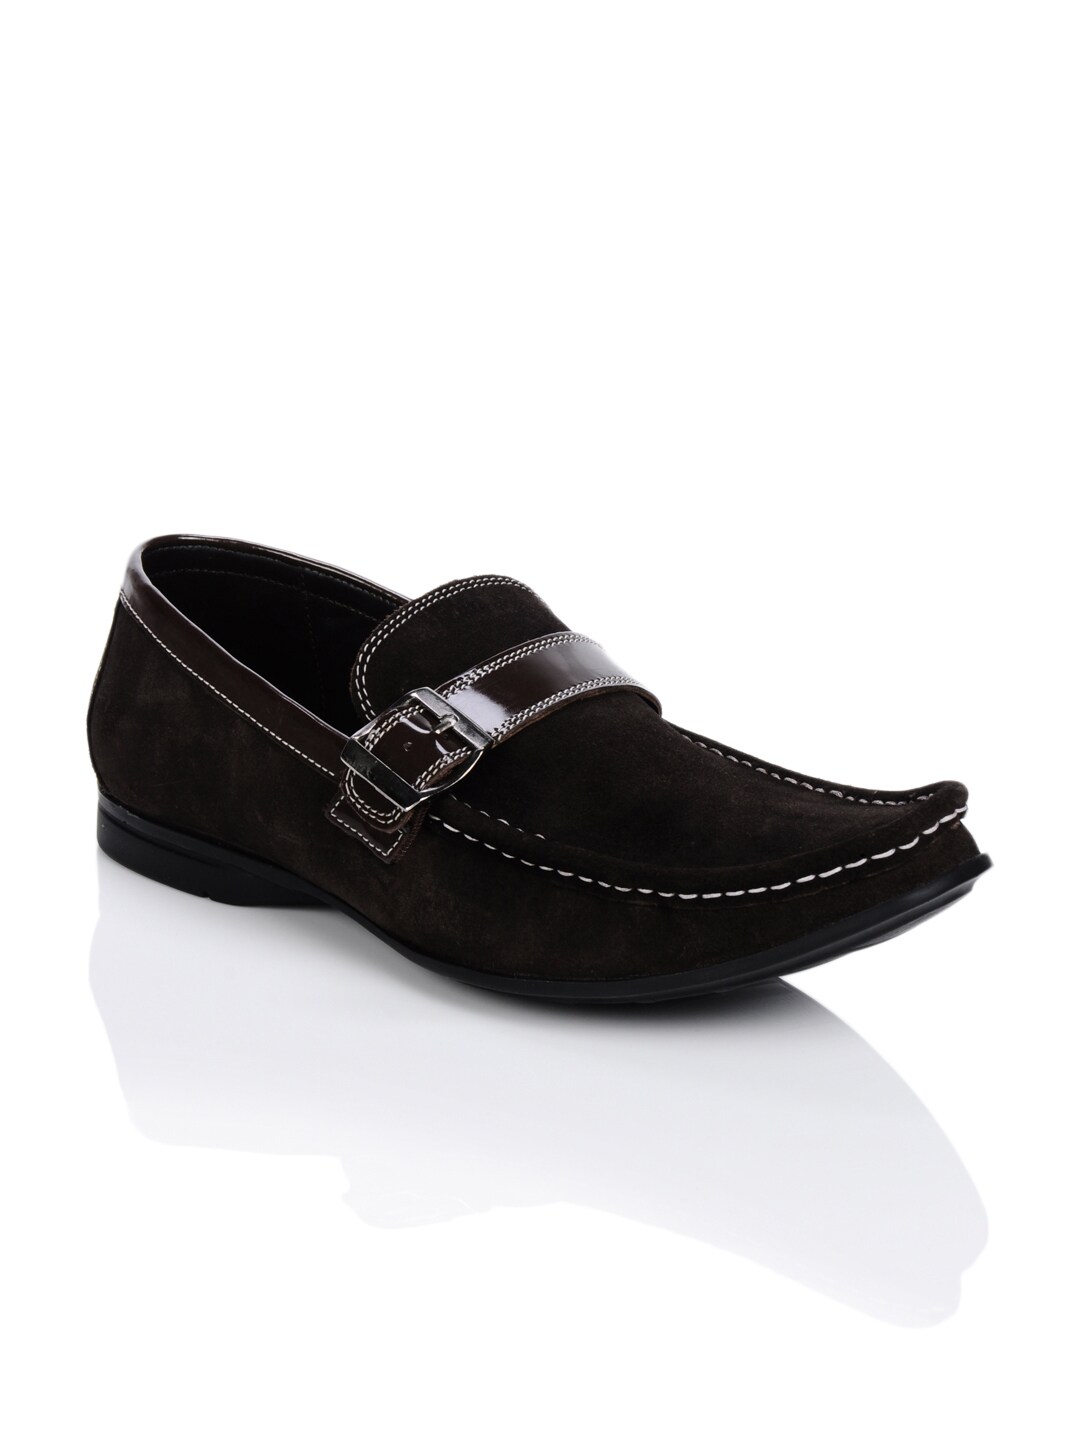 Franco Leone Men Brown Shoes